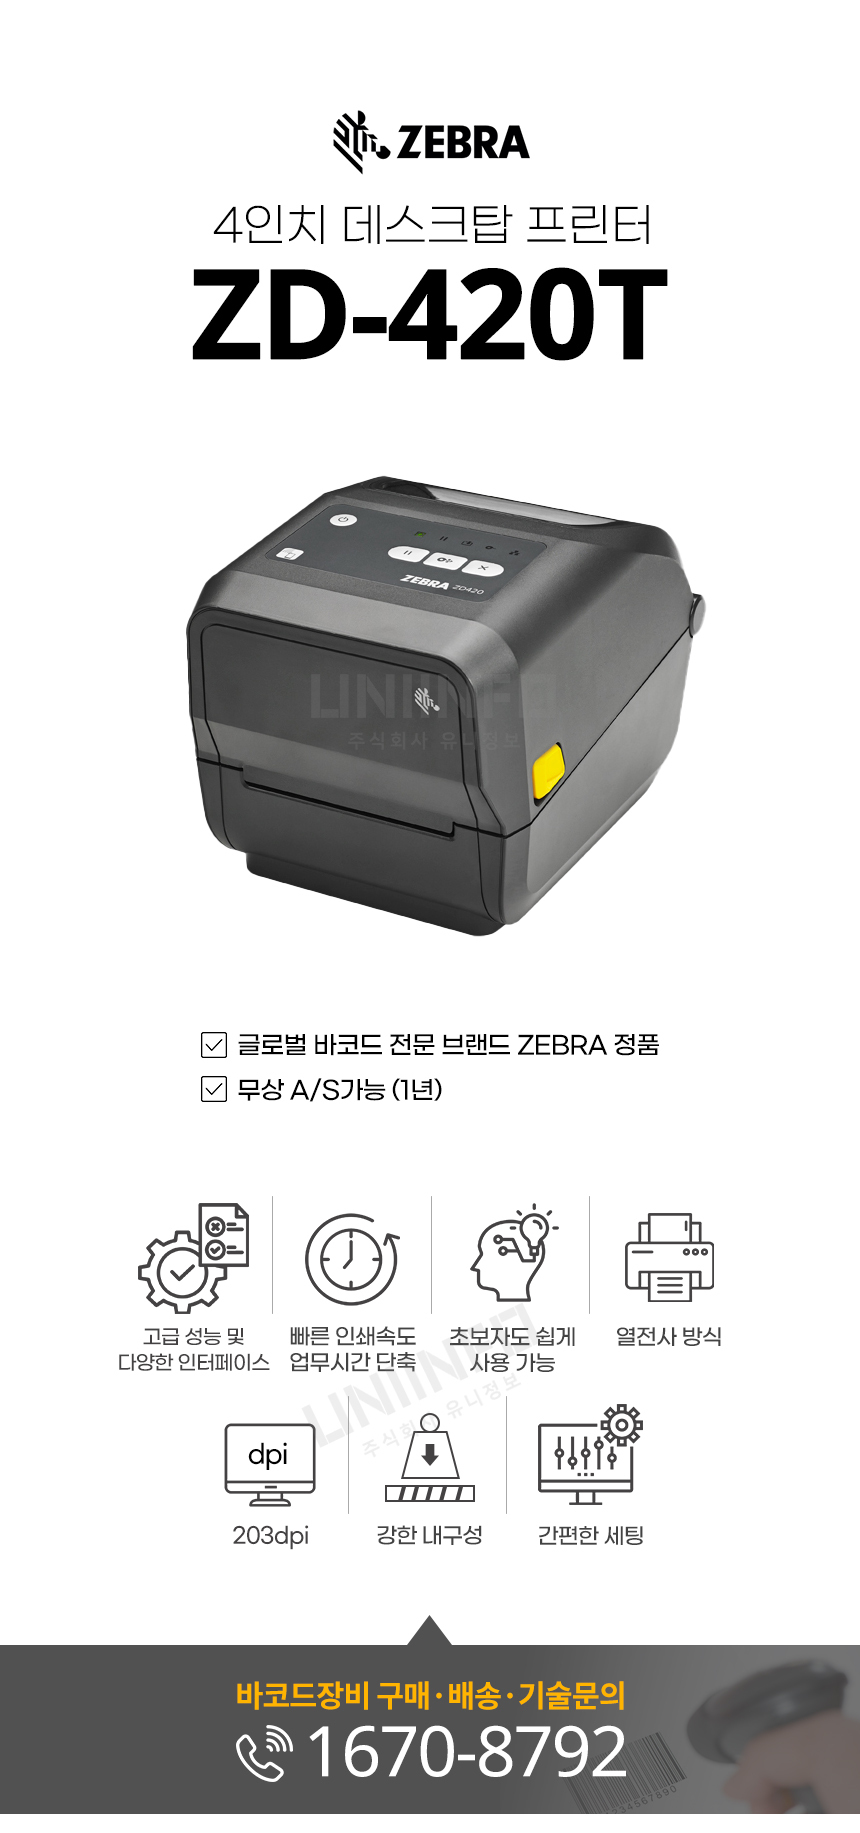 ZEBRA 4인치 데스크탑 프린터 ZD-420T 무상 AS 가능 고성능 다양한 인터페이스 빠른 인쇄속도 열전사 방식 해상도 203DPI 내구성